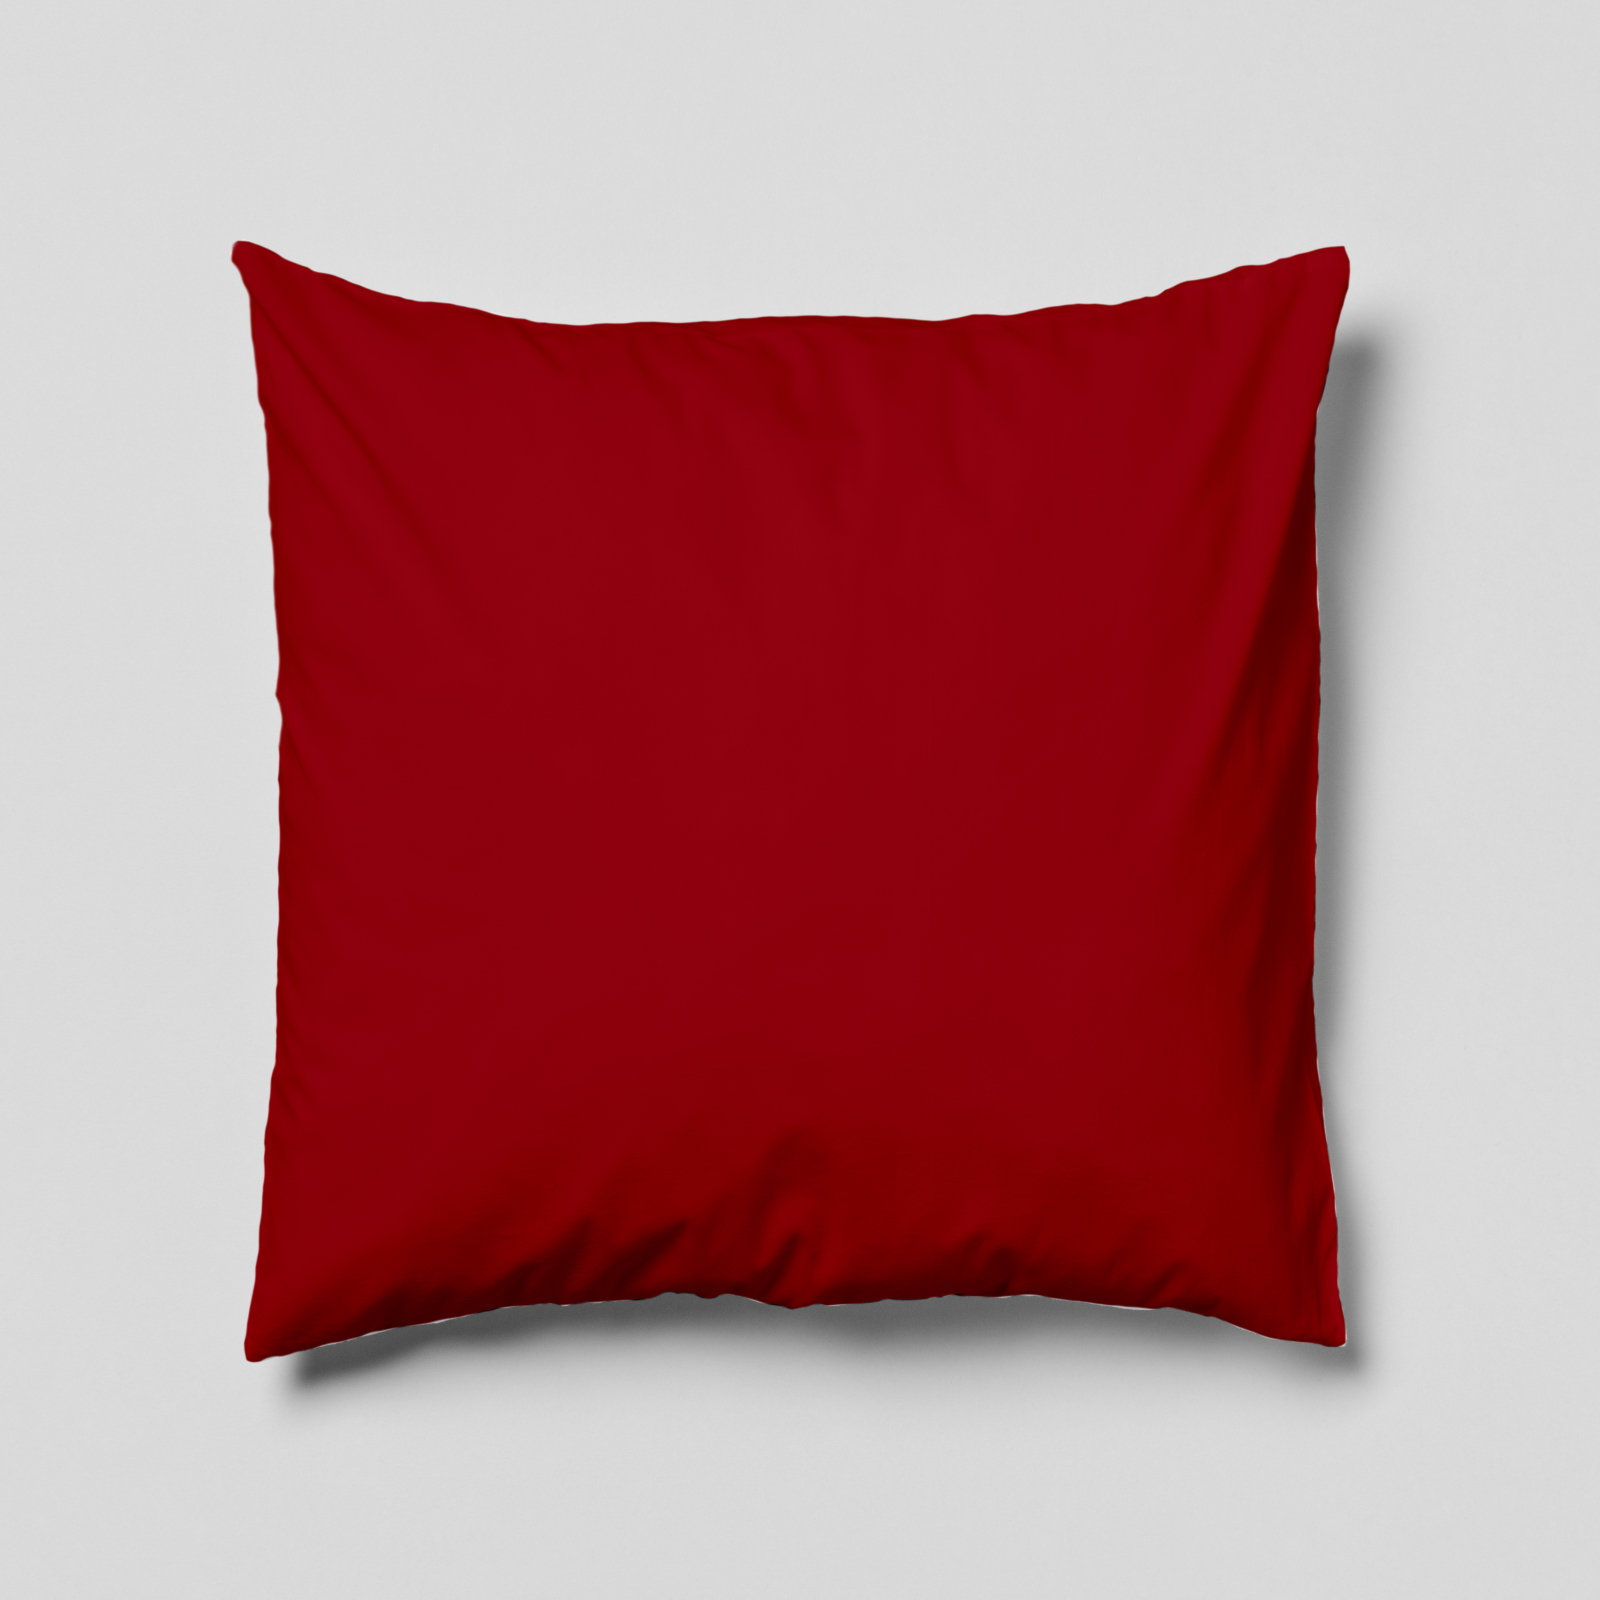 Komplettkissen Polyester-Bordeaux Rot / 30x30 cm